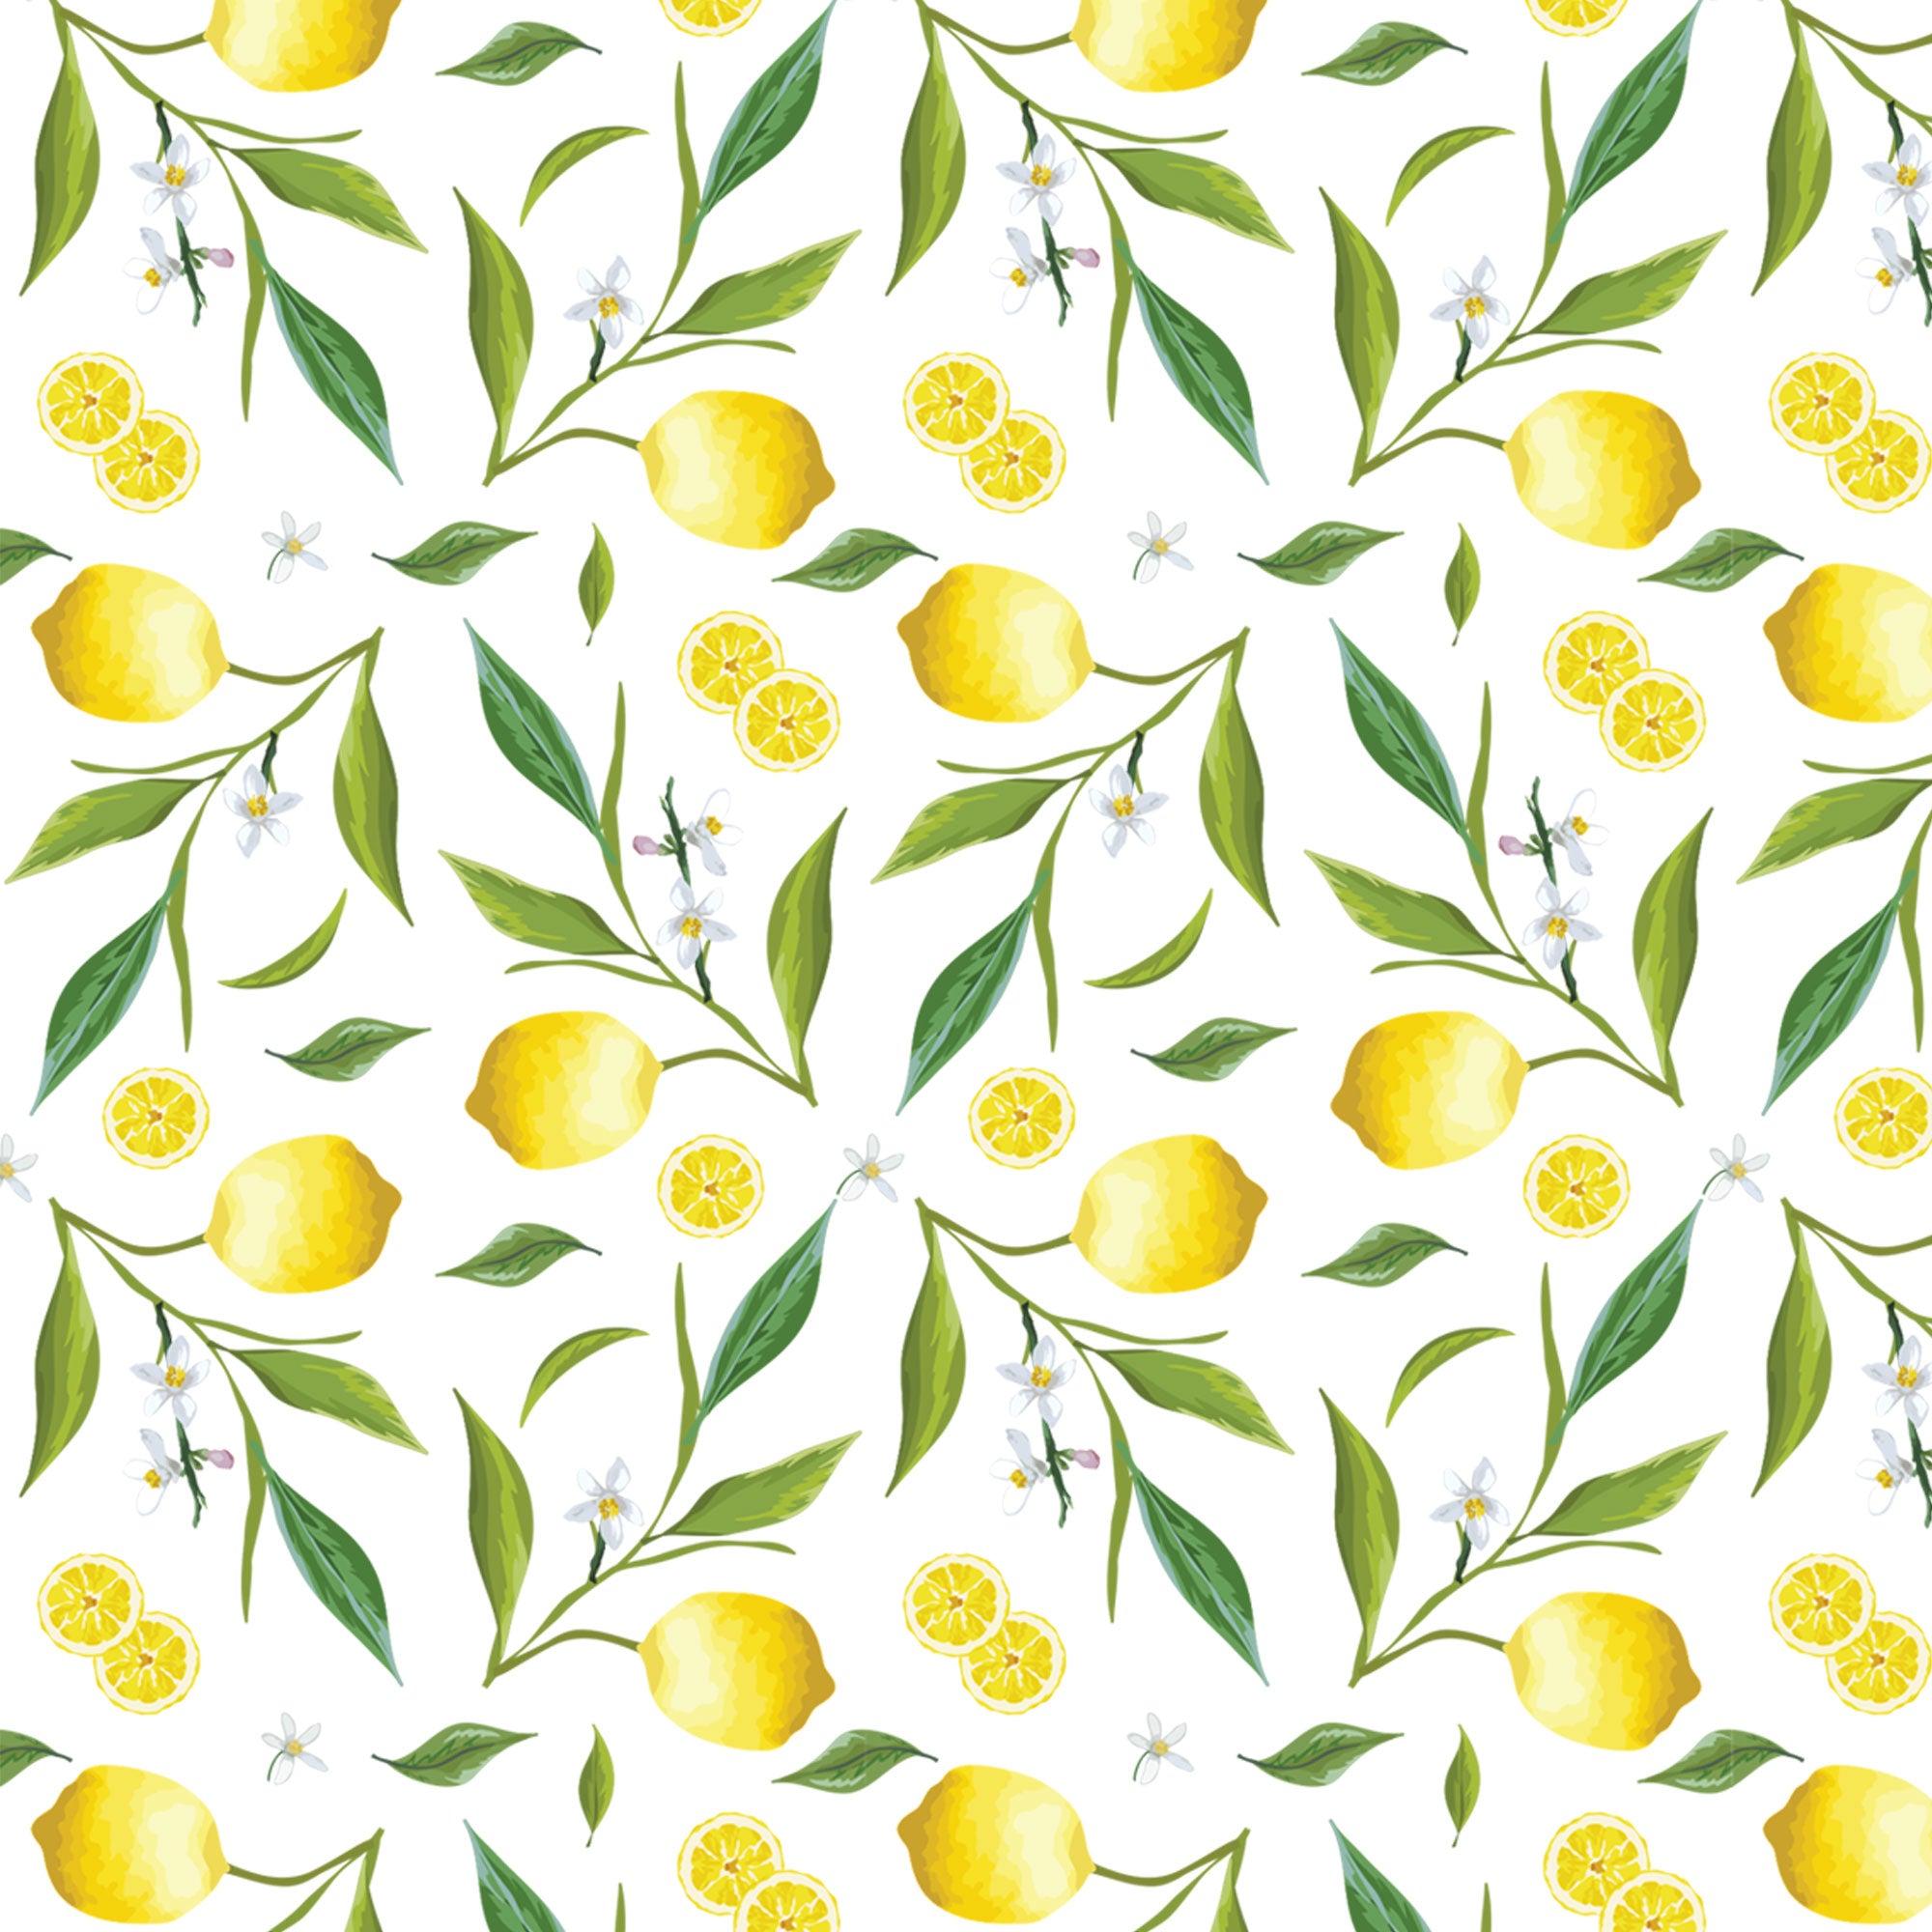 Lemons wallpaper